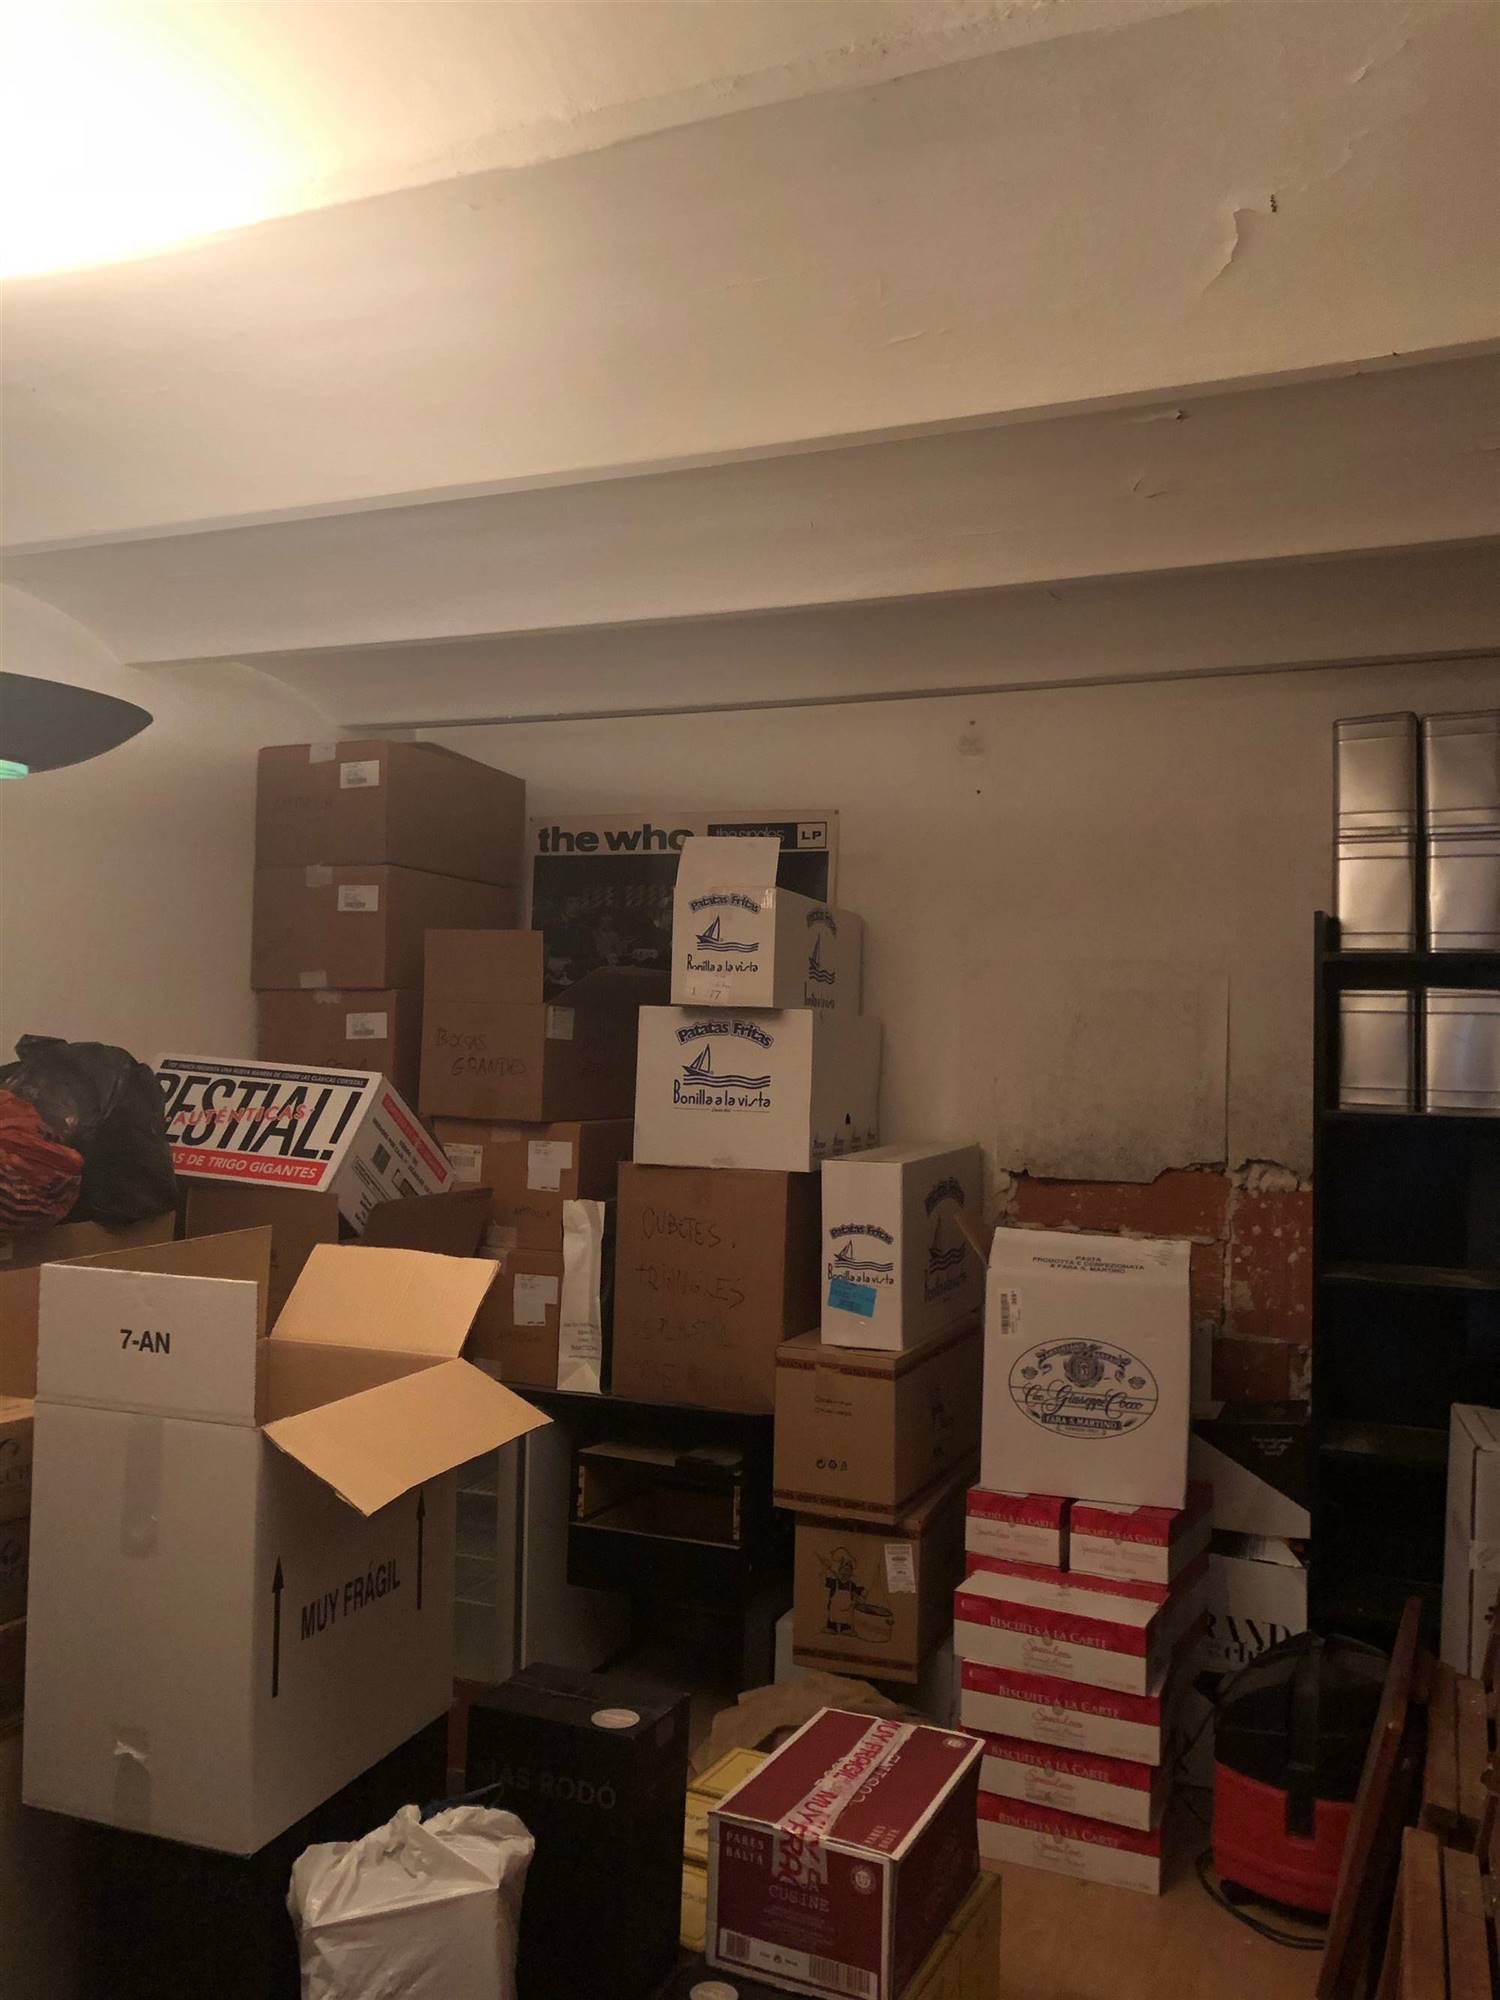 Un almacén lleno de cajas que estaba totalmente descuidado.